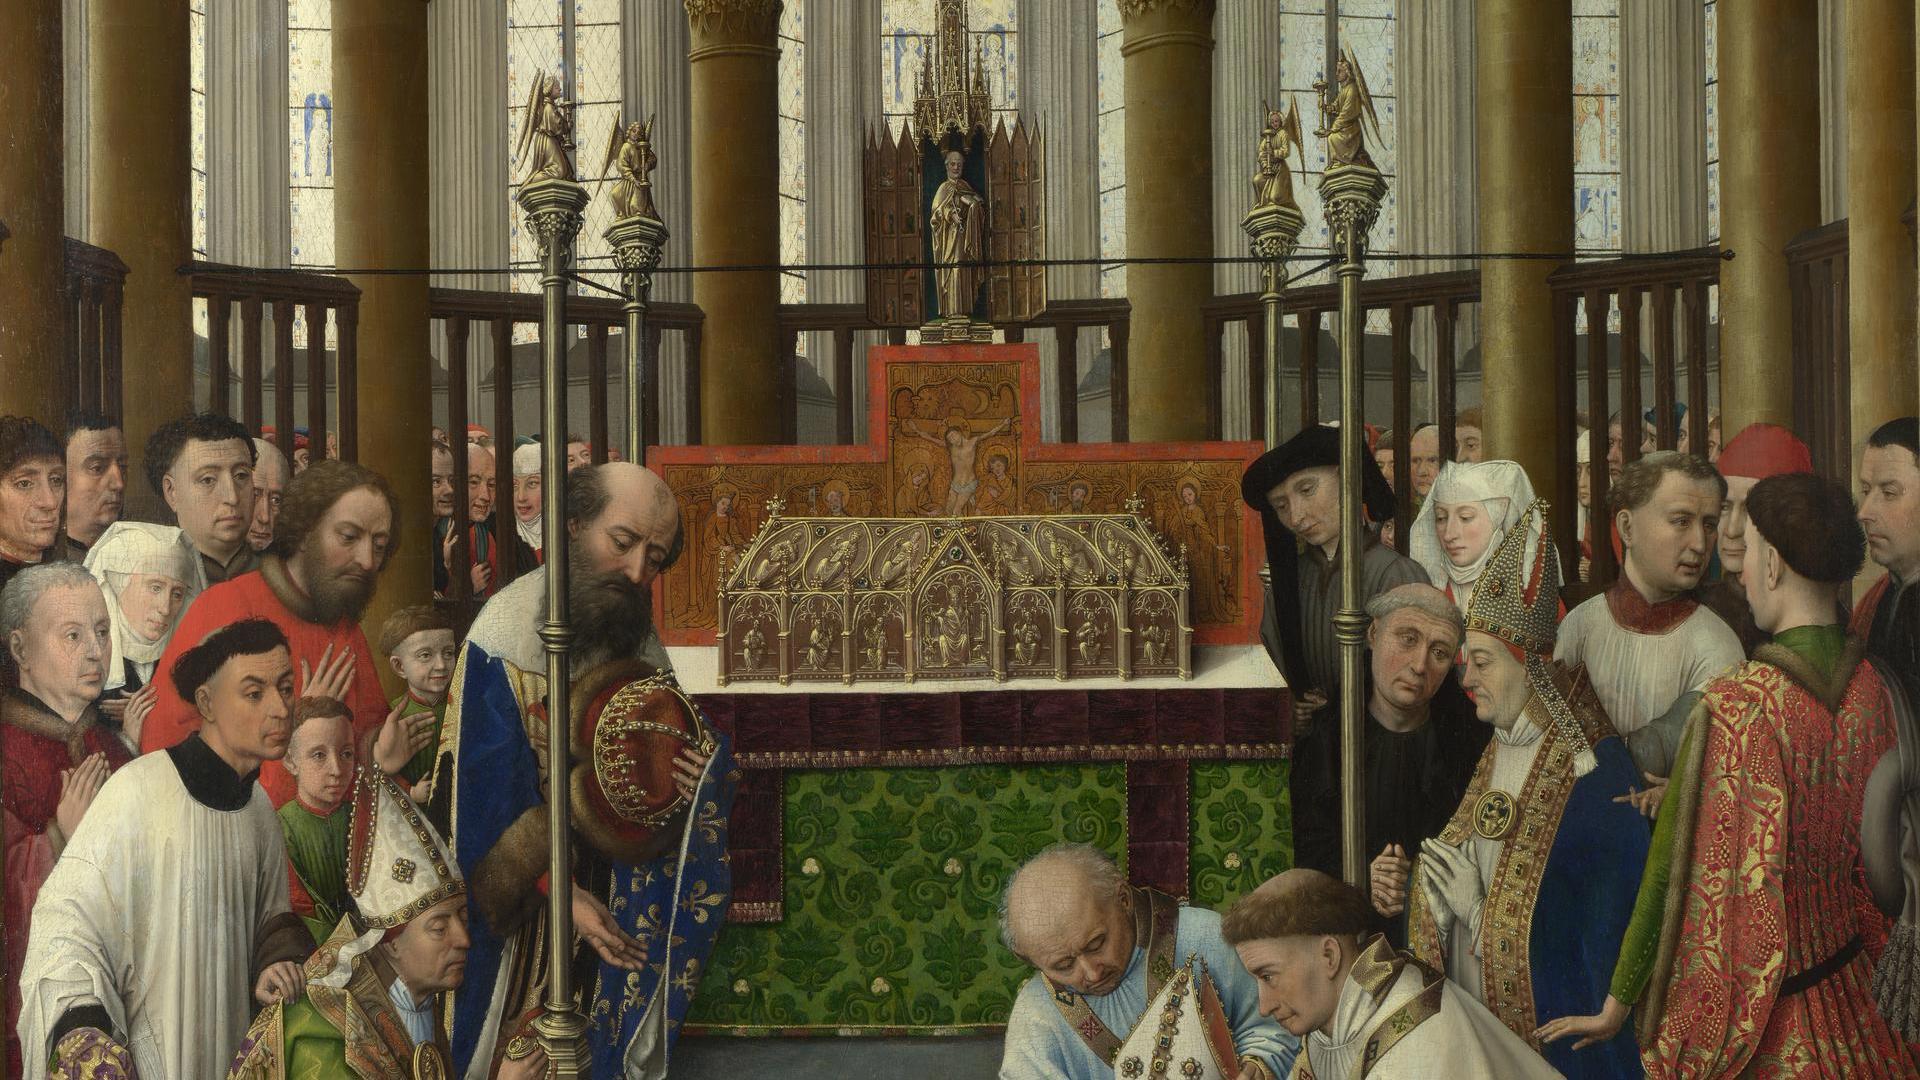 The Exhumation of Saint Hubert by Rogier van der Weyden and workshop